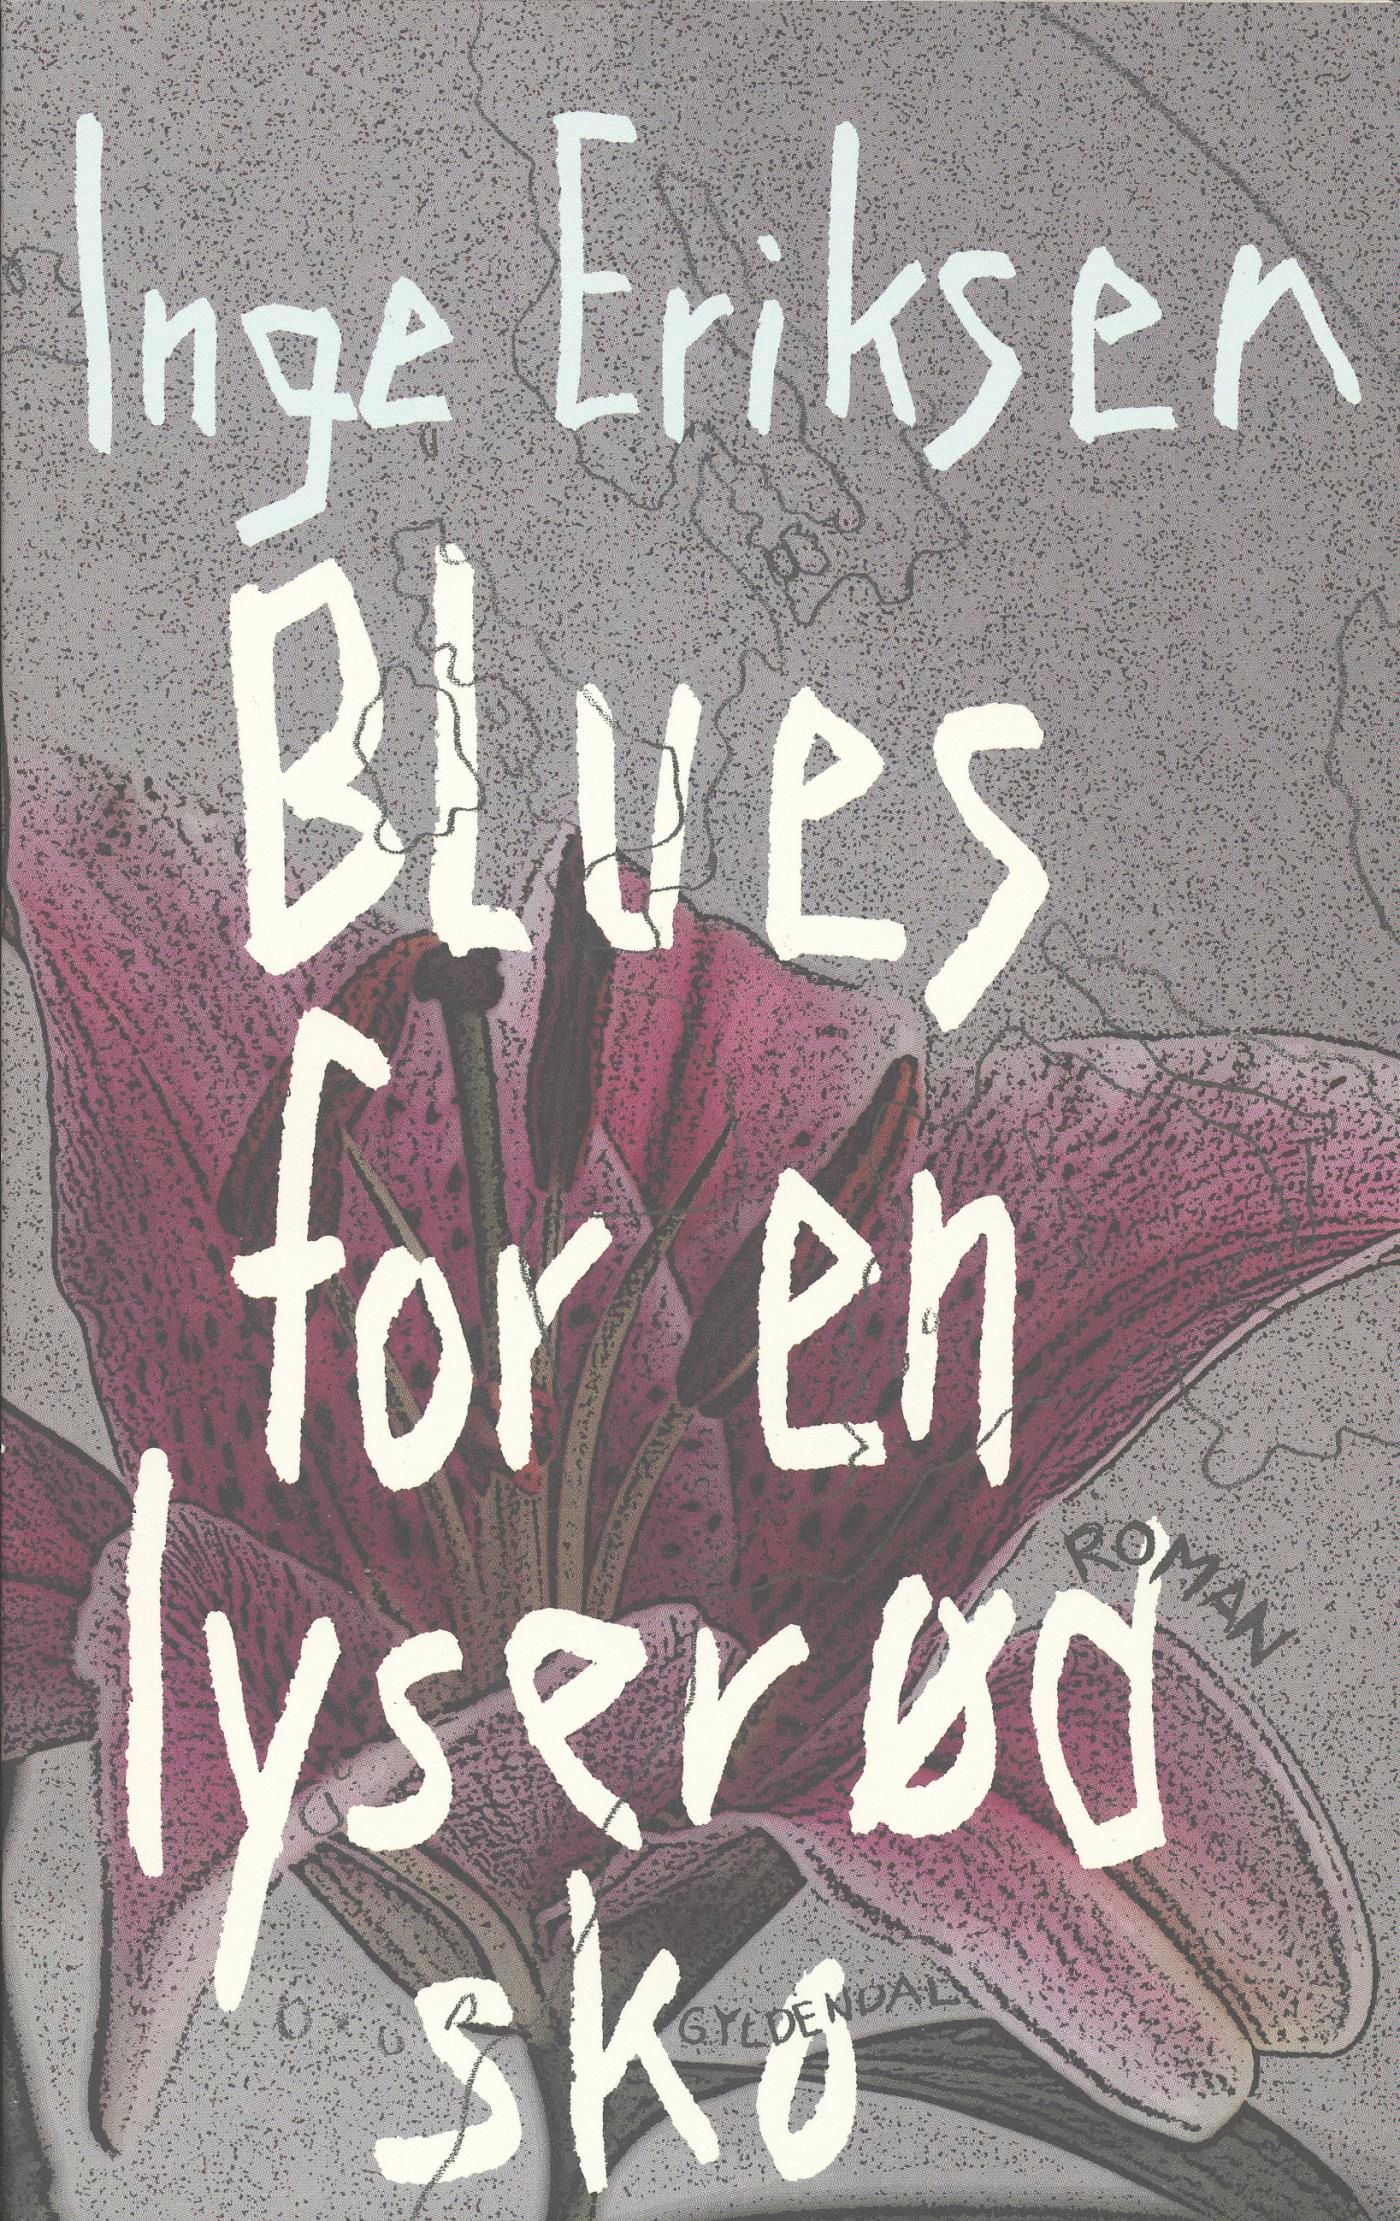 Blues for en lyserød sko, eBook by Inge Eriksen